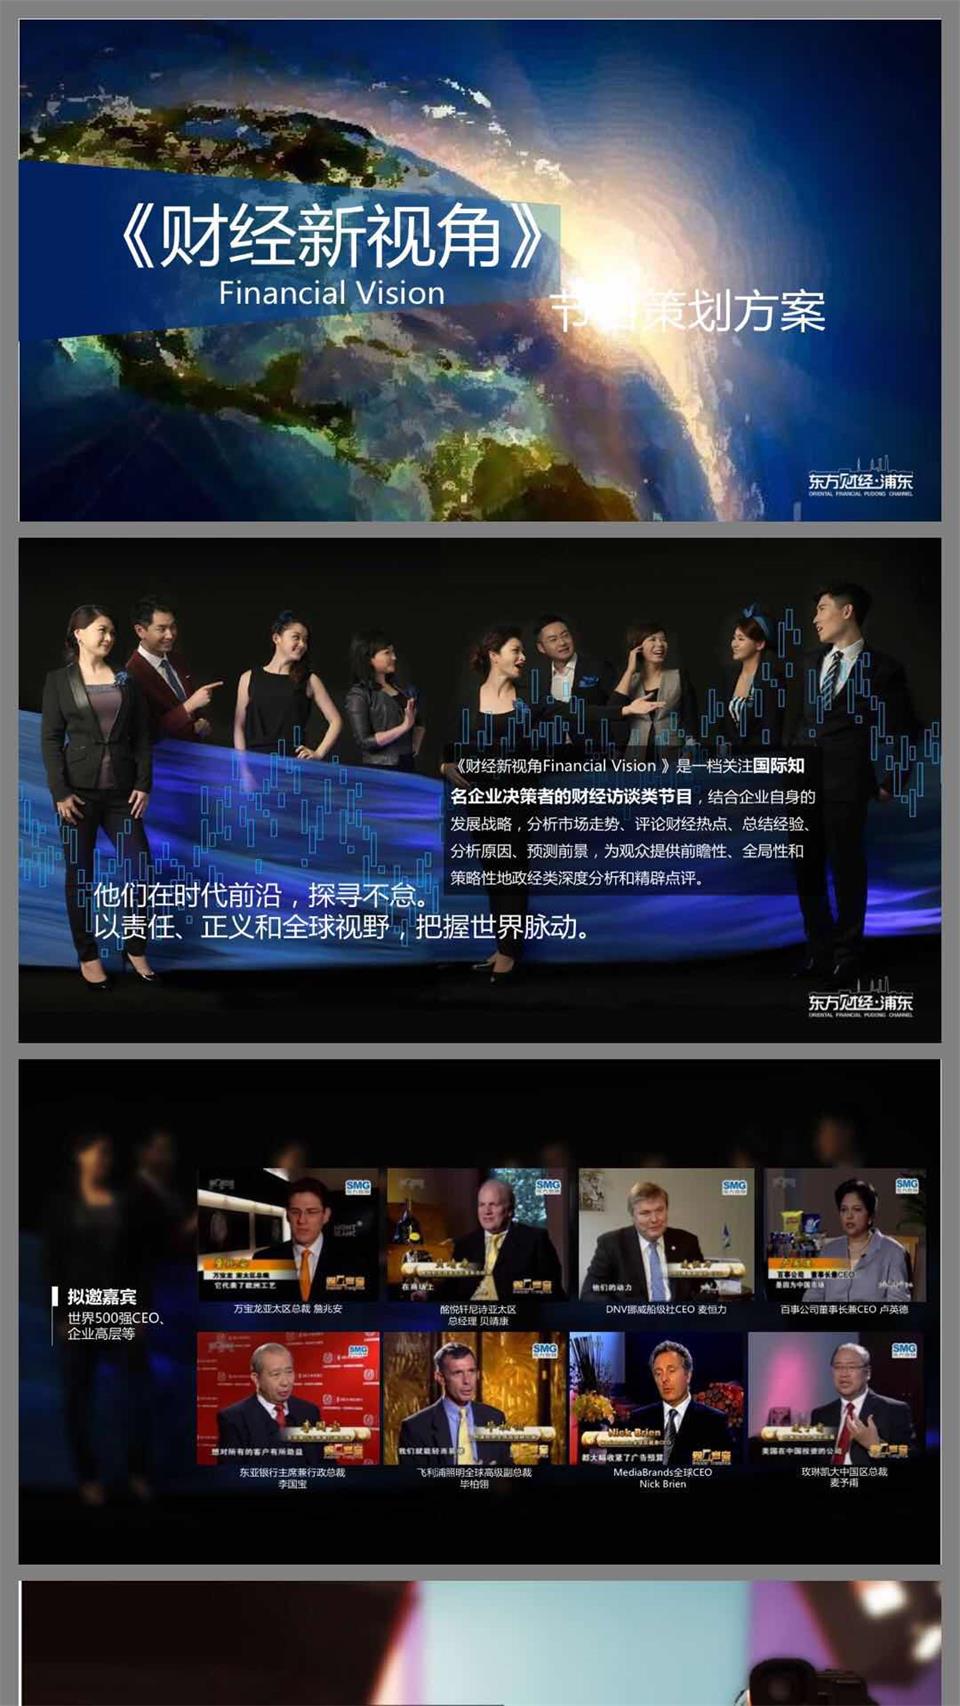 上海电视台《财经新视角》